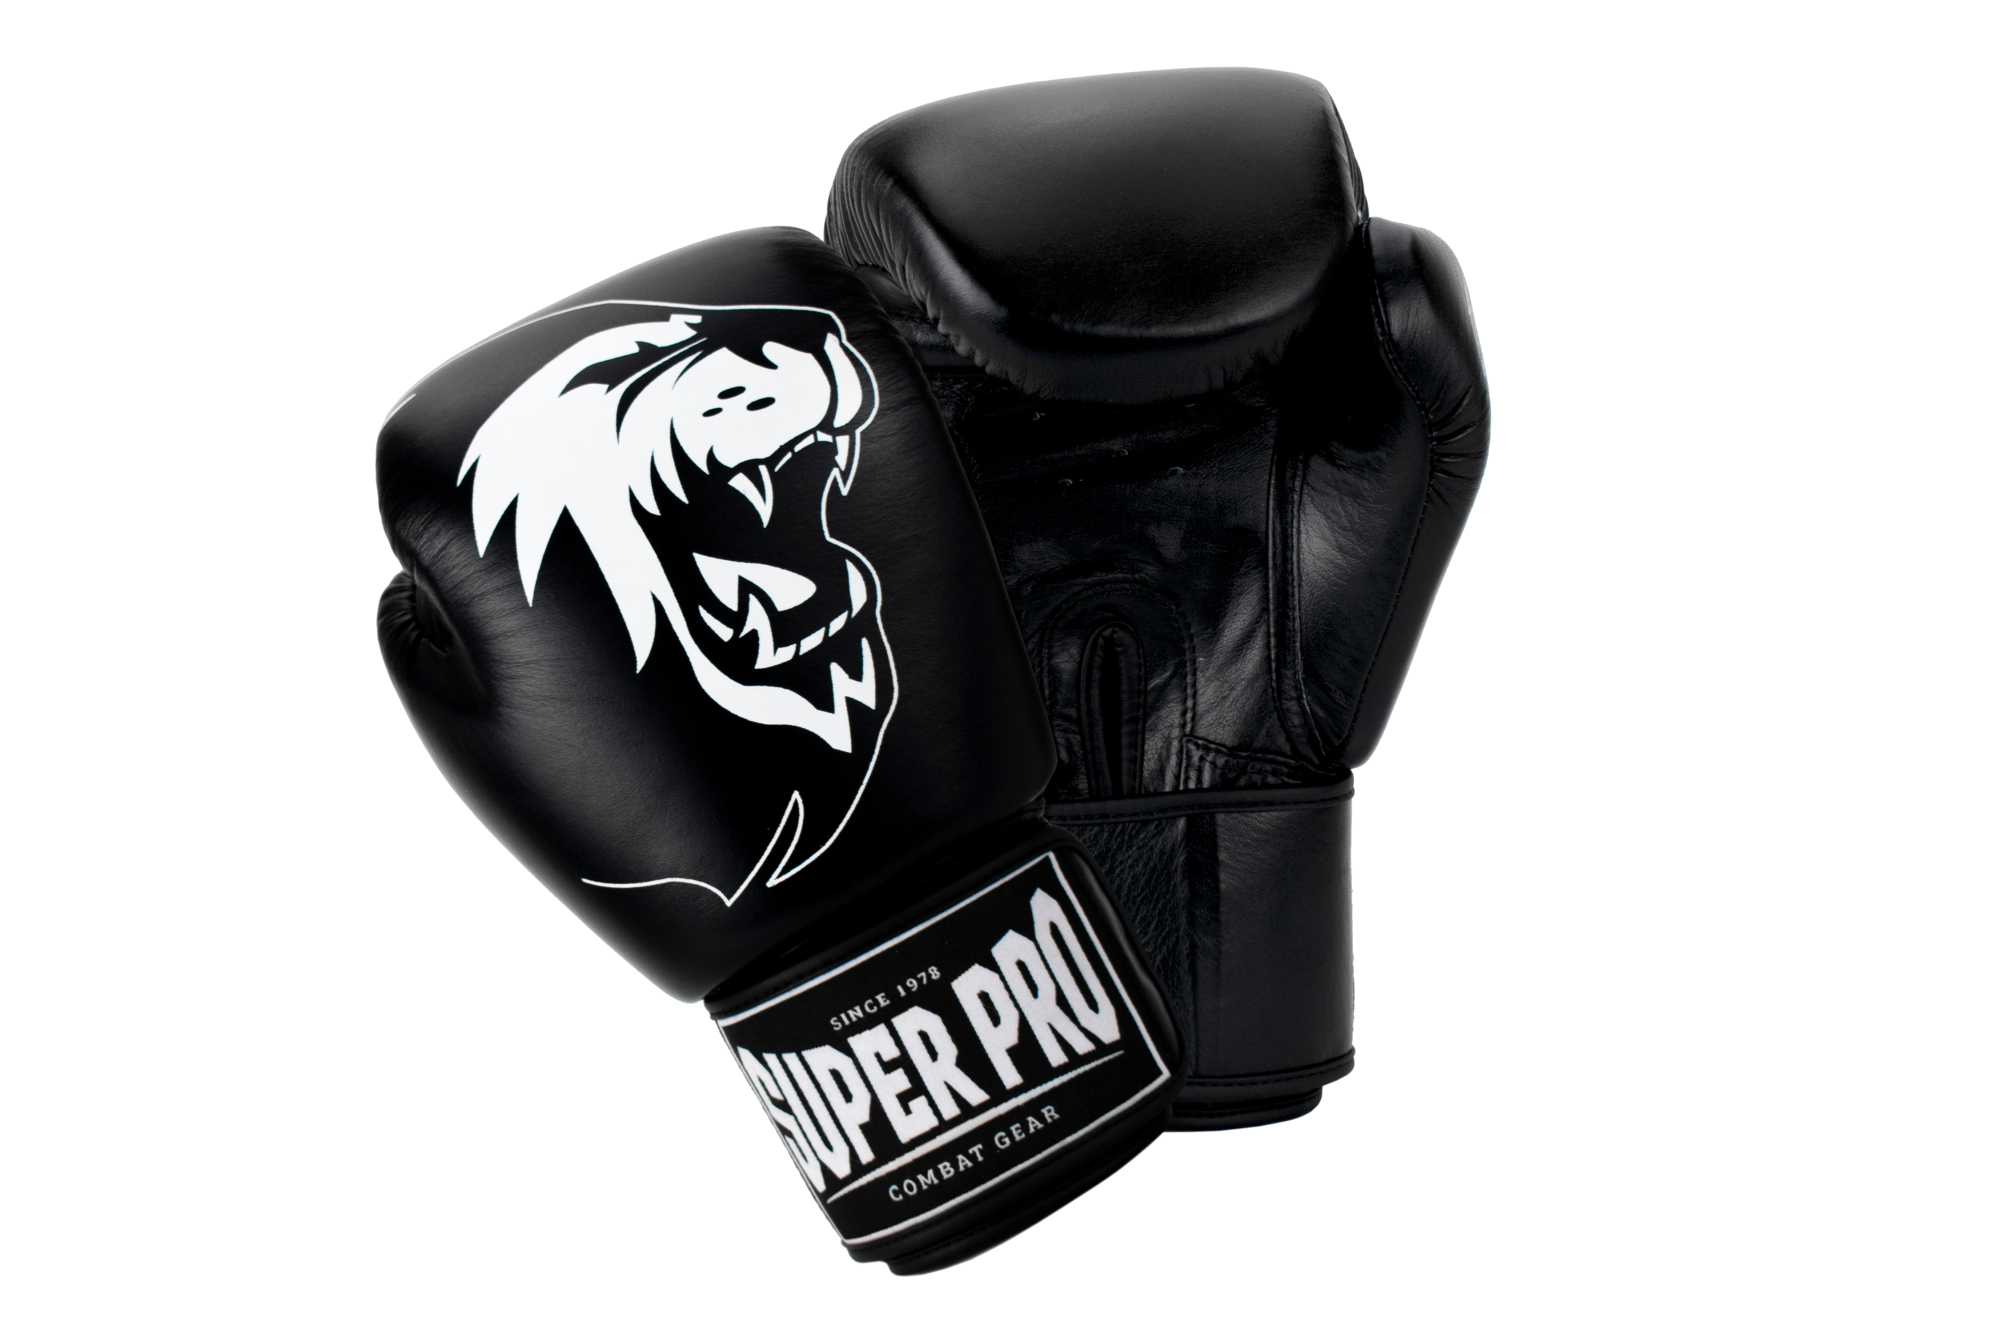 Schwarz/Weiß - Boxhandschuhe Pro Super 10 Warrior oz Helisports